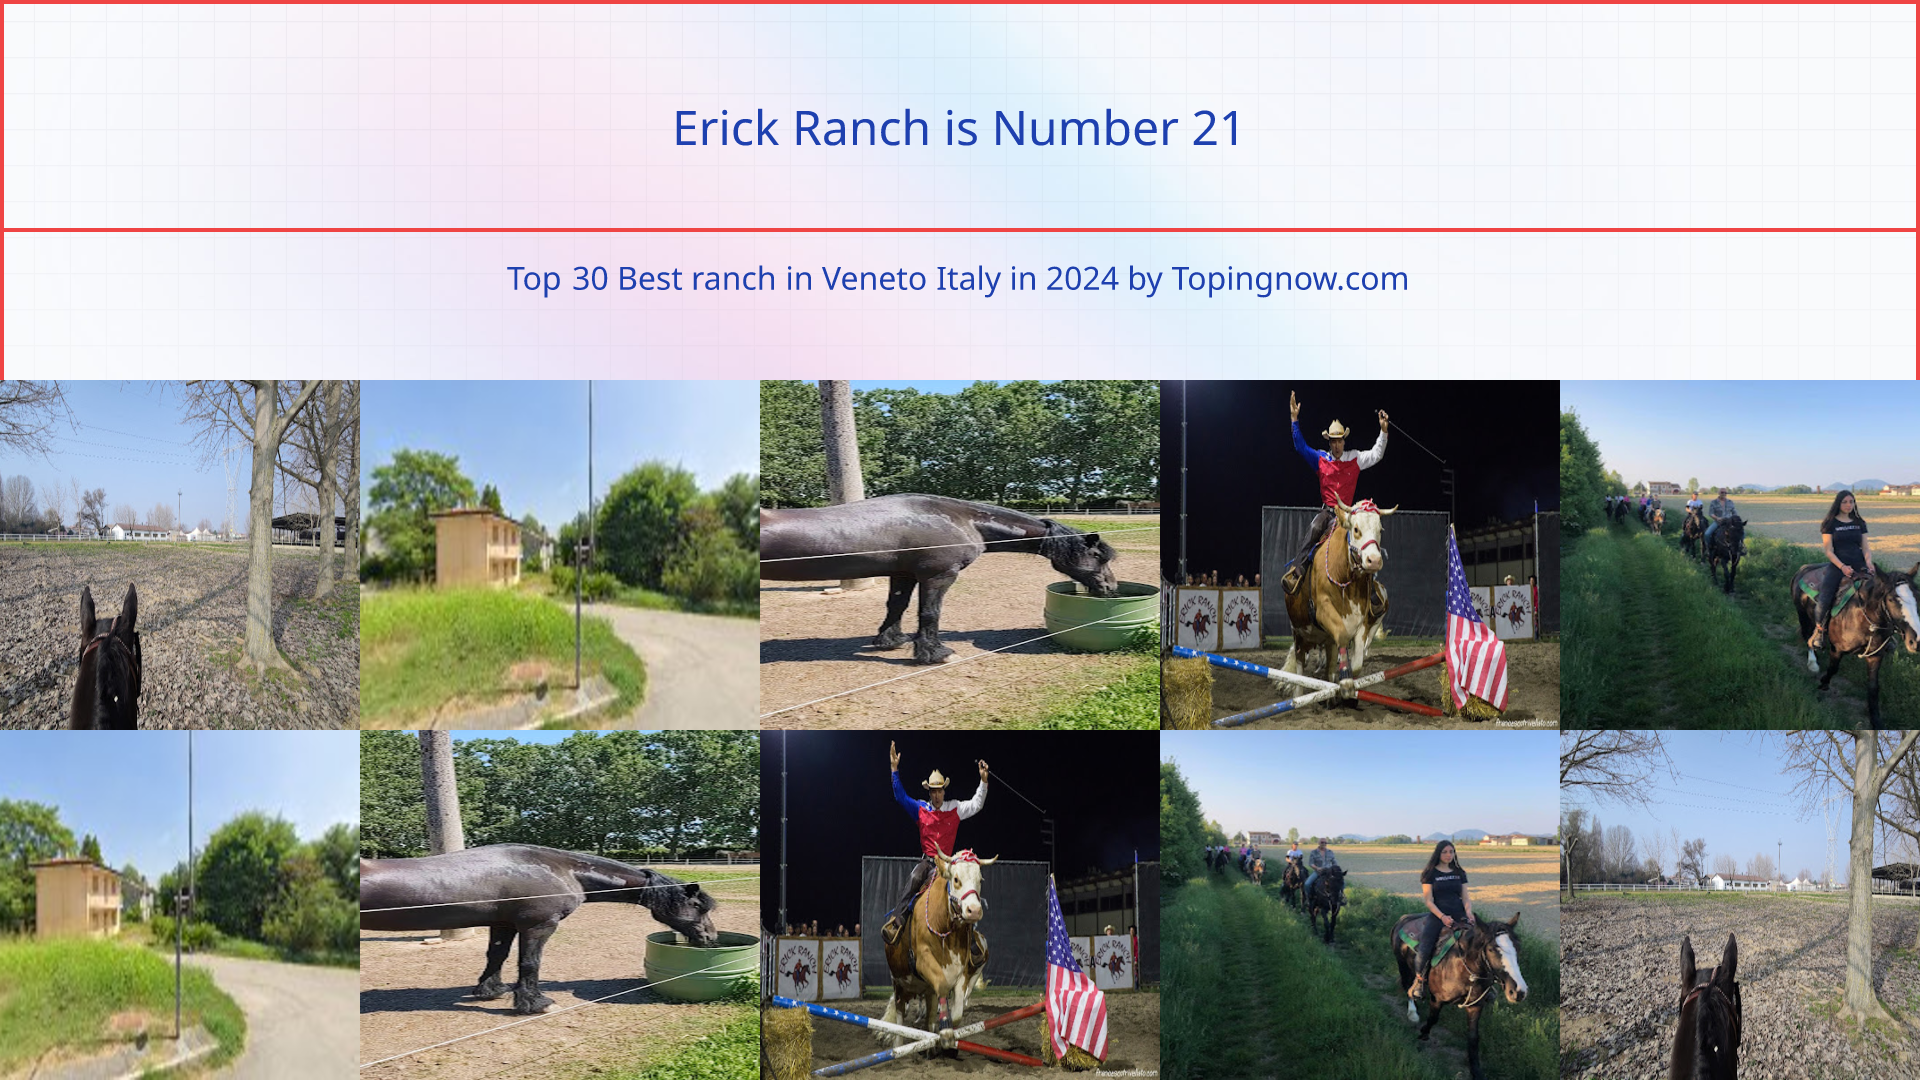 Erick Ranch: Top 30 Best ranch in Veneto Italy in 2024